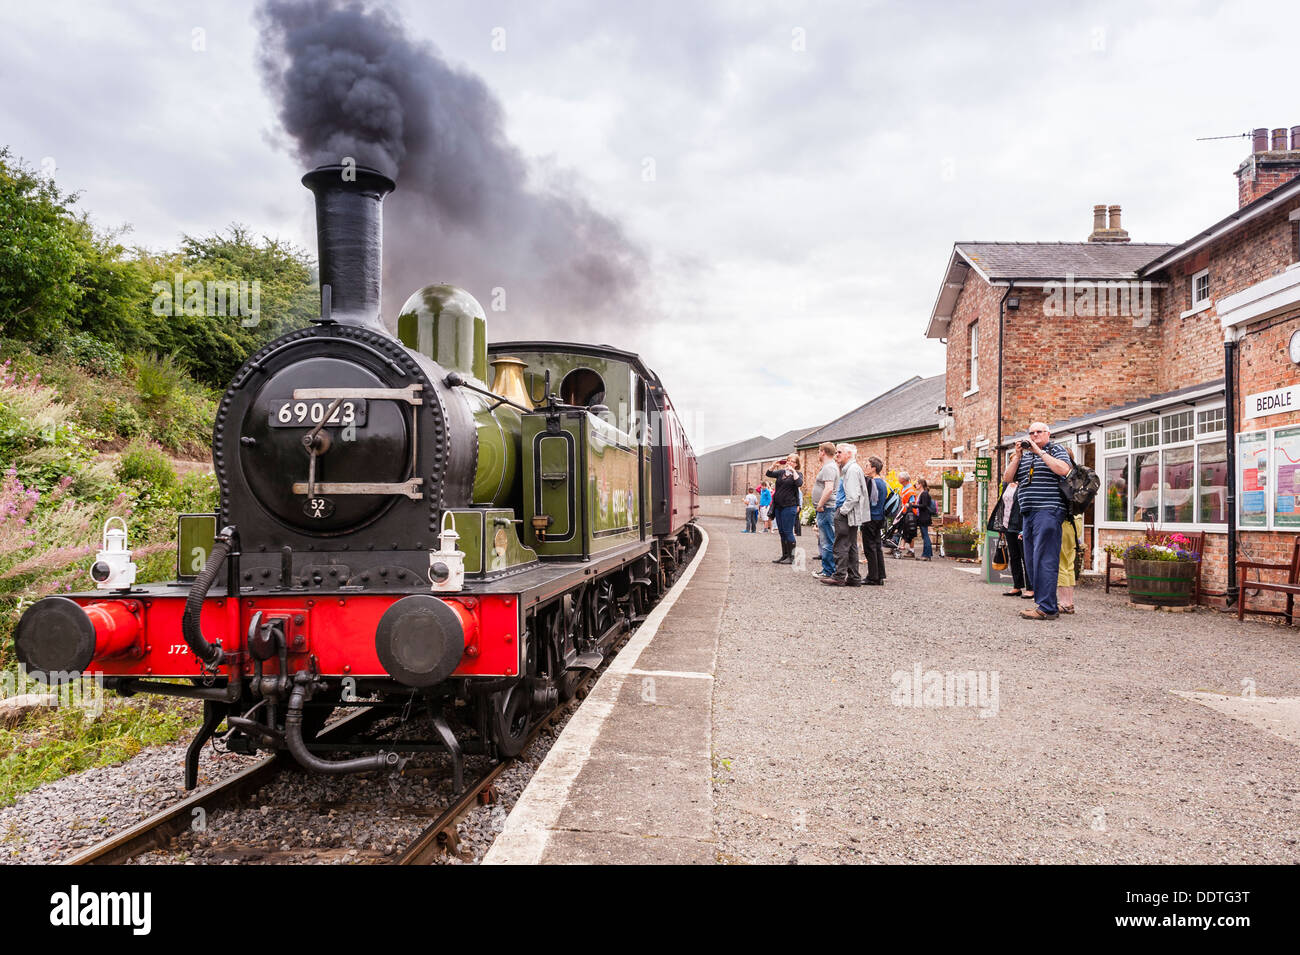 Un train à vapeur le moteur à la station sur la Bedale Wensleydale Railway à Leyburn, North Yorkshire, Angleterre, Grande-Bretagne, Royaume-Uni Banque D'Images